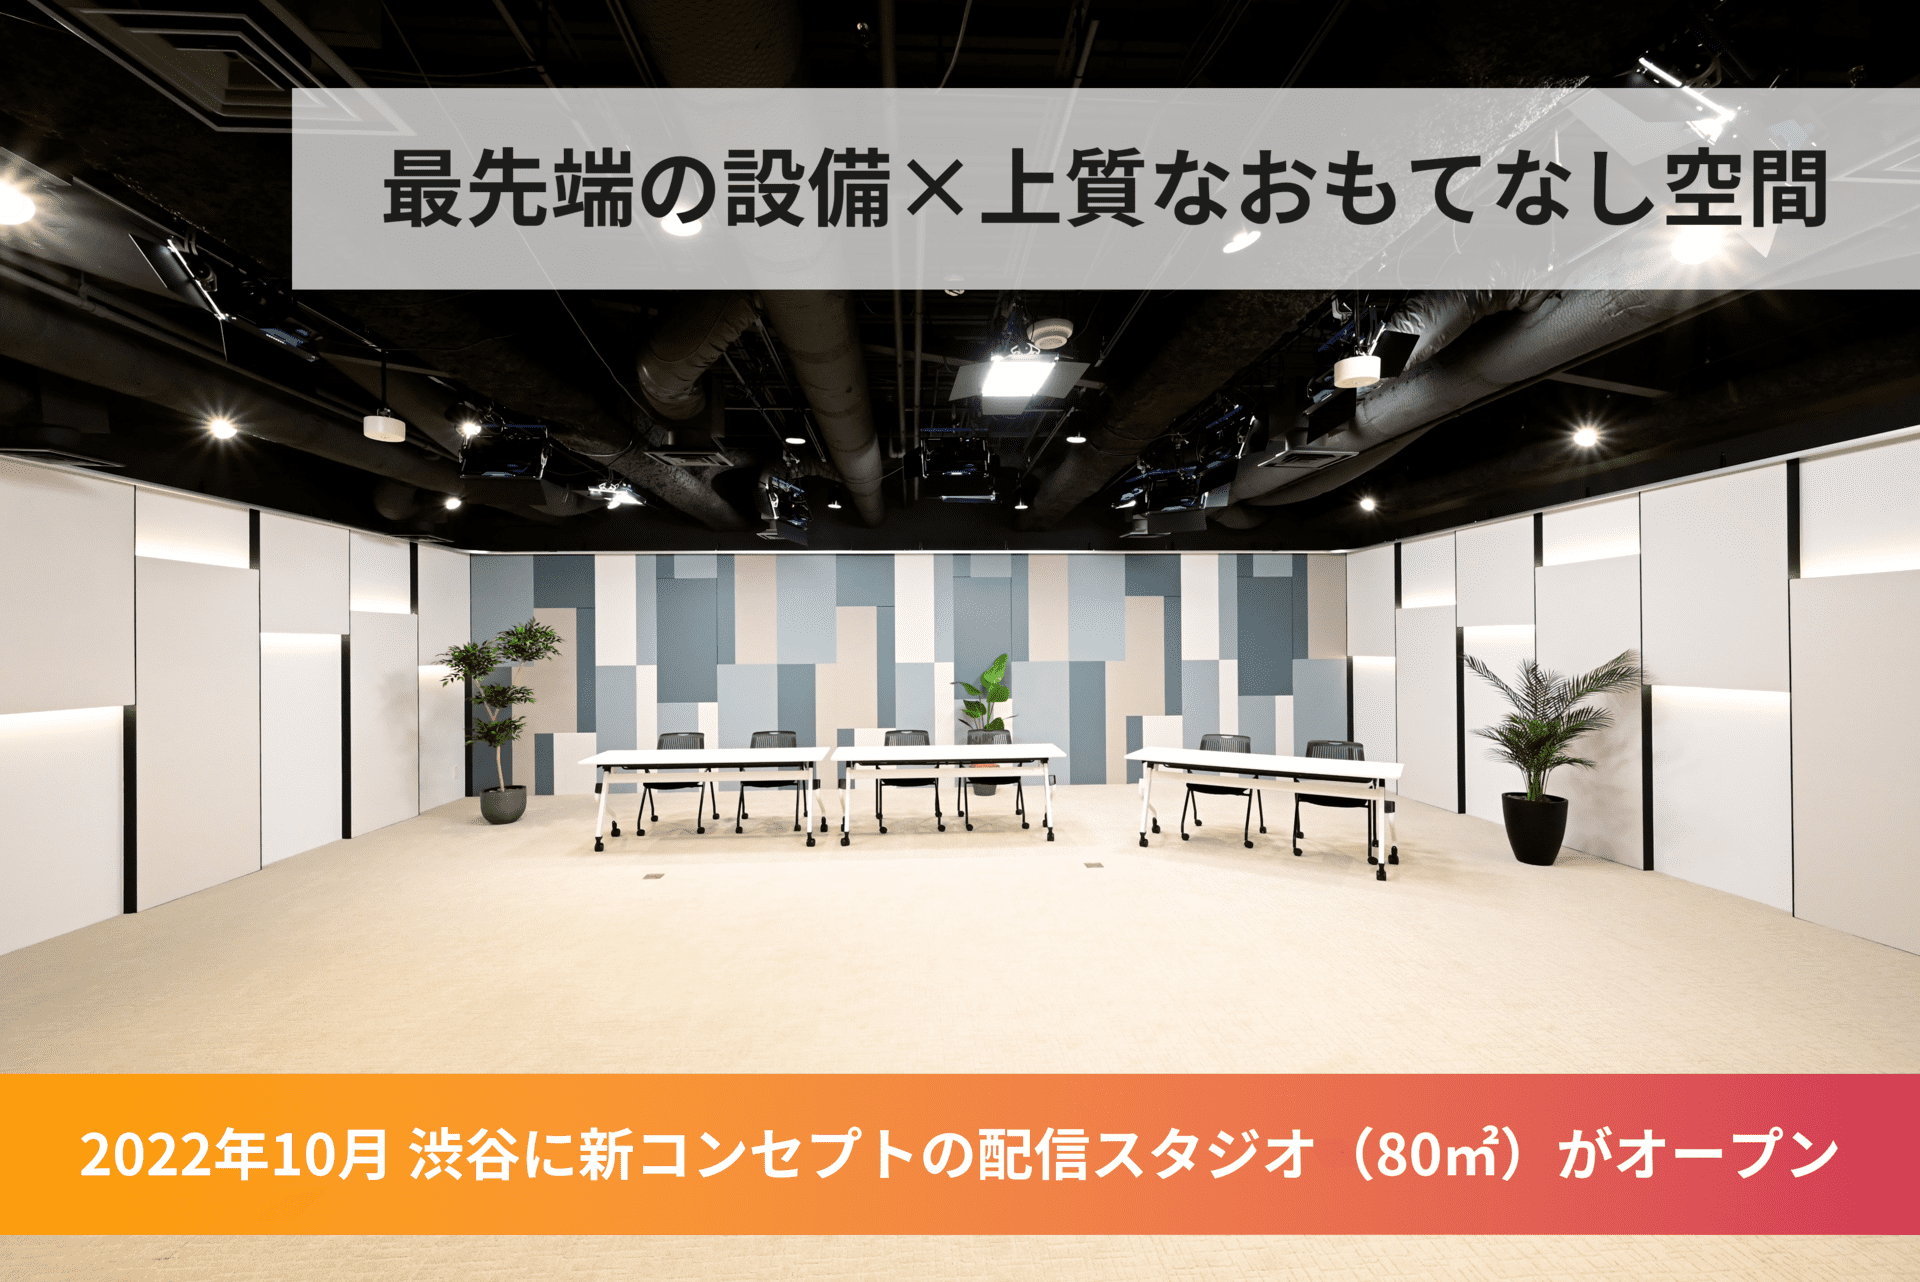 渋谷におしゃれな新スタジオオープン - 撮影／配信スタジオ「PLAY STUDIO」